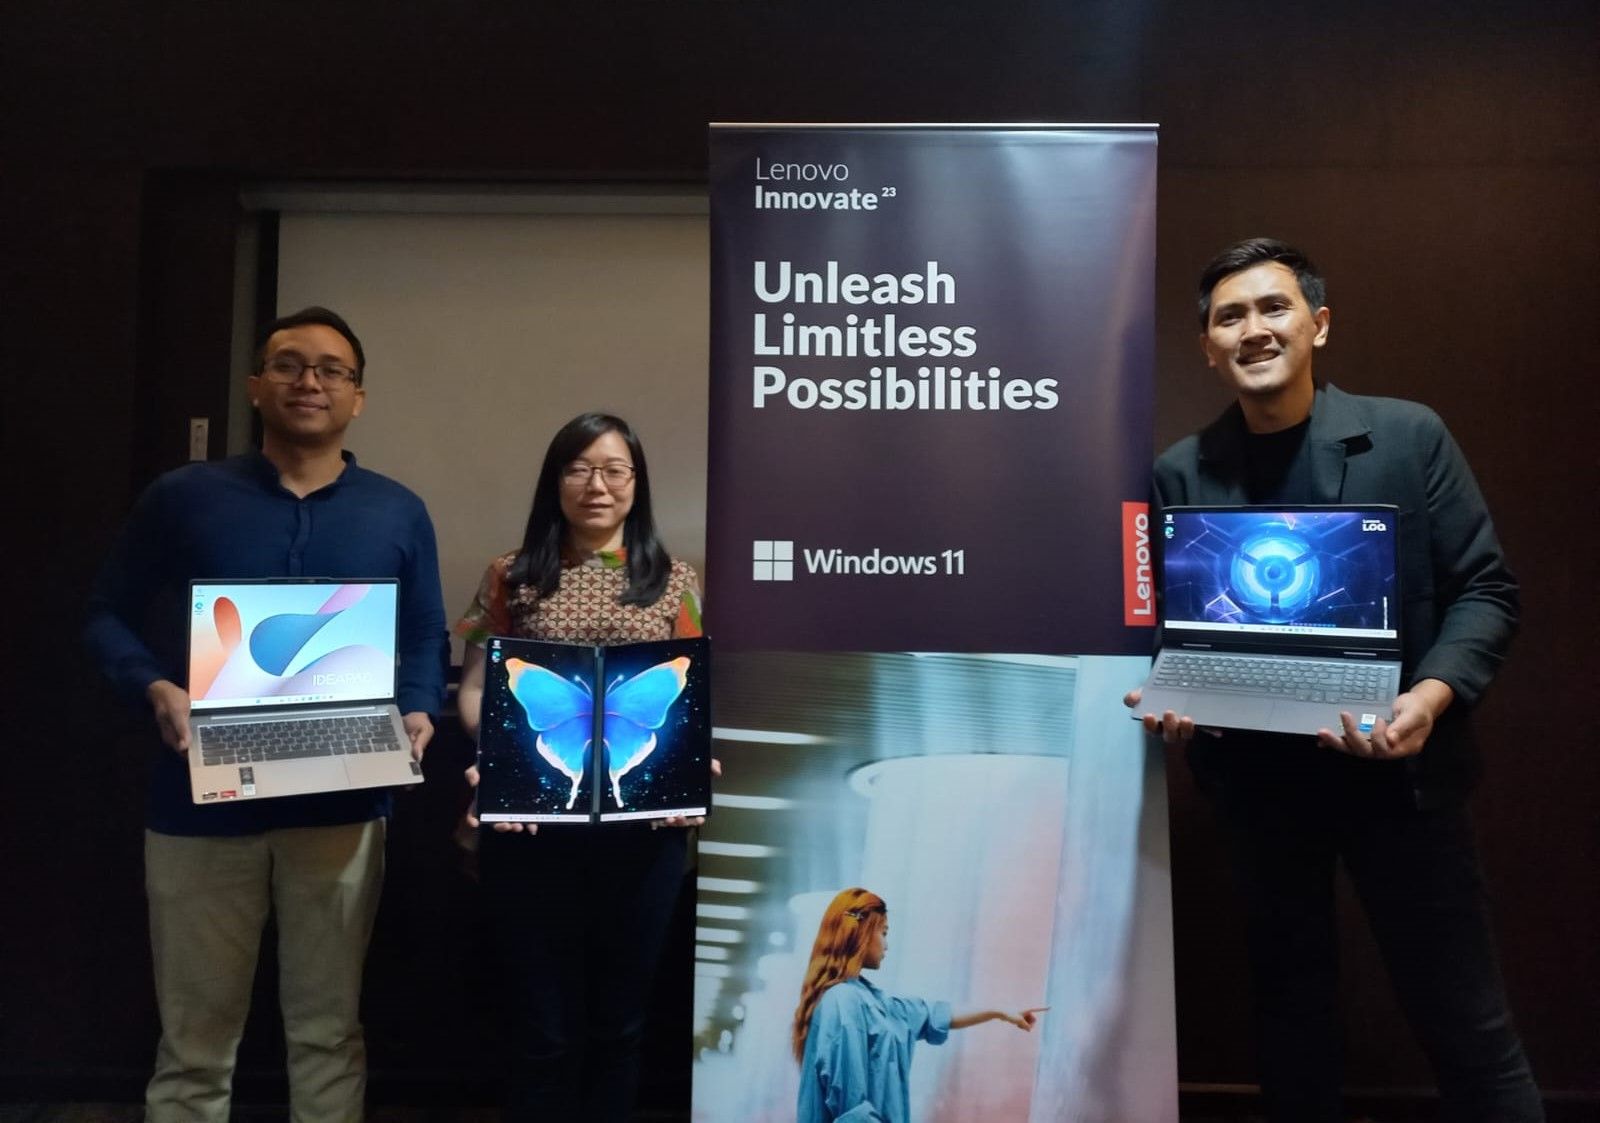 Laptop Gaming Lenovo Paling Powerful akan Dipamerkan di Acara Peluncuran Produk Lenovo Innovate 2023